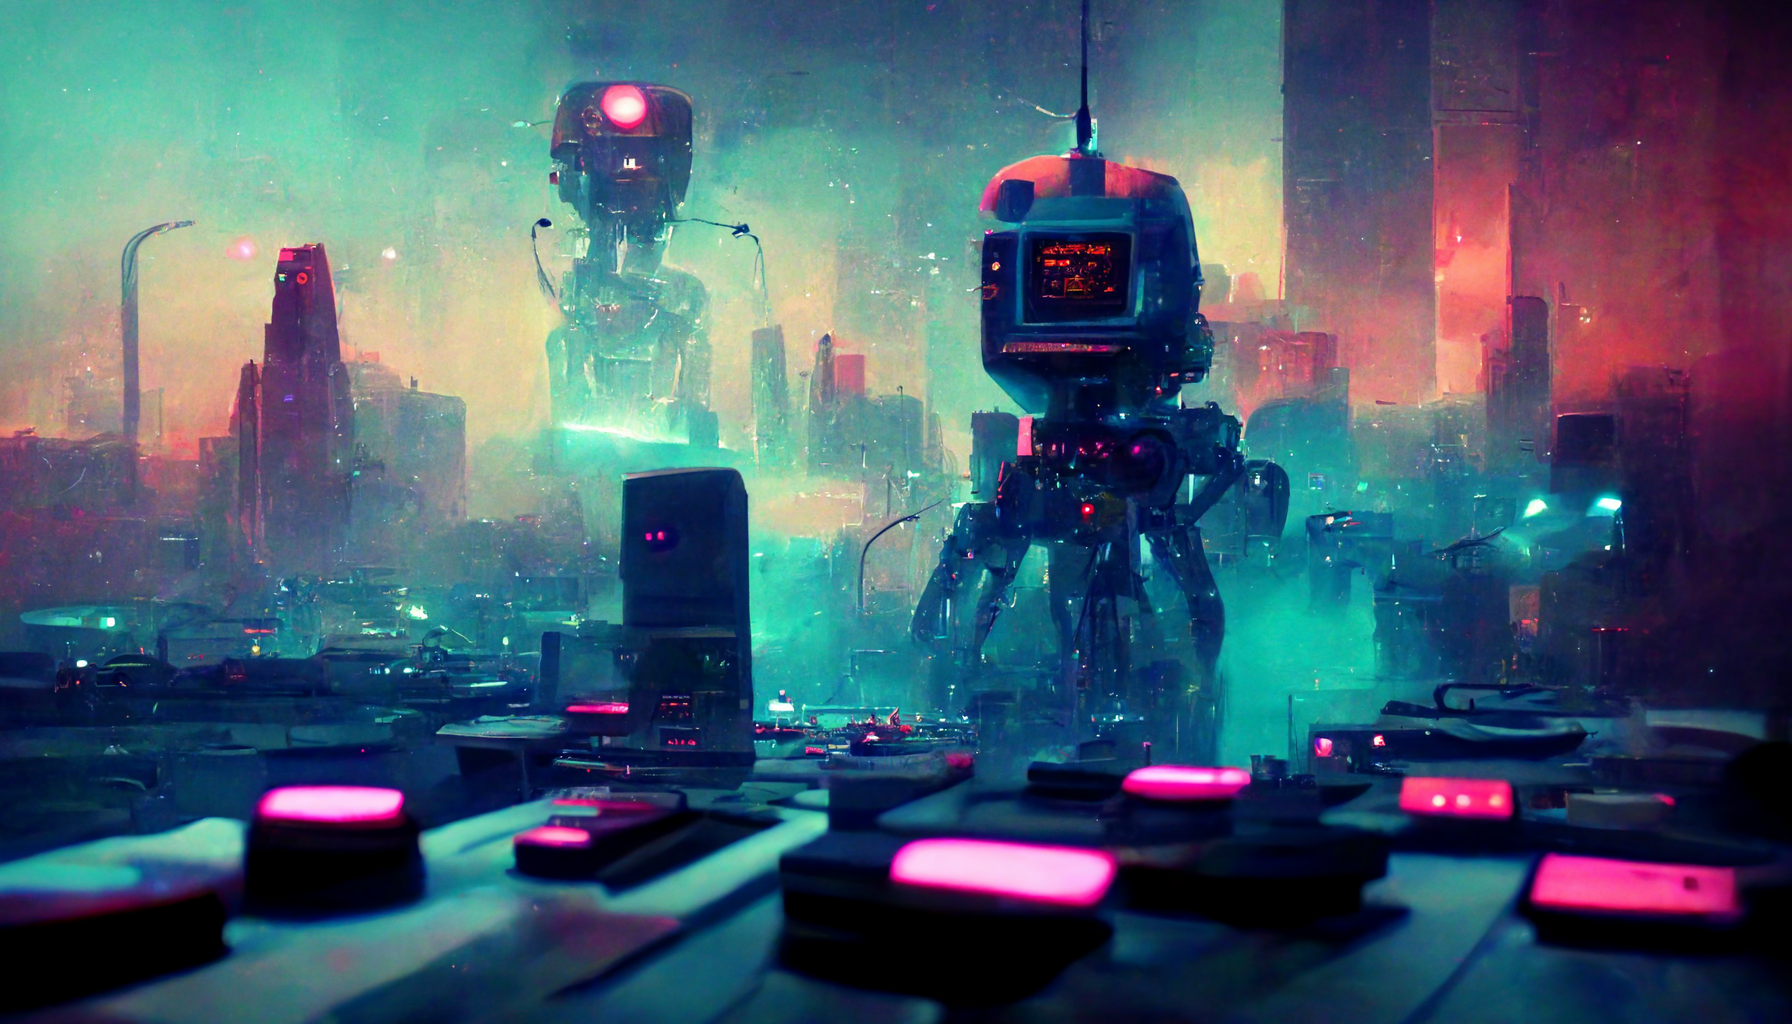 A robot making music.